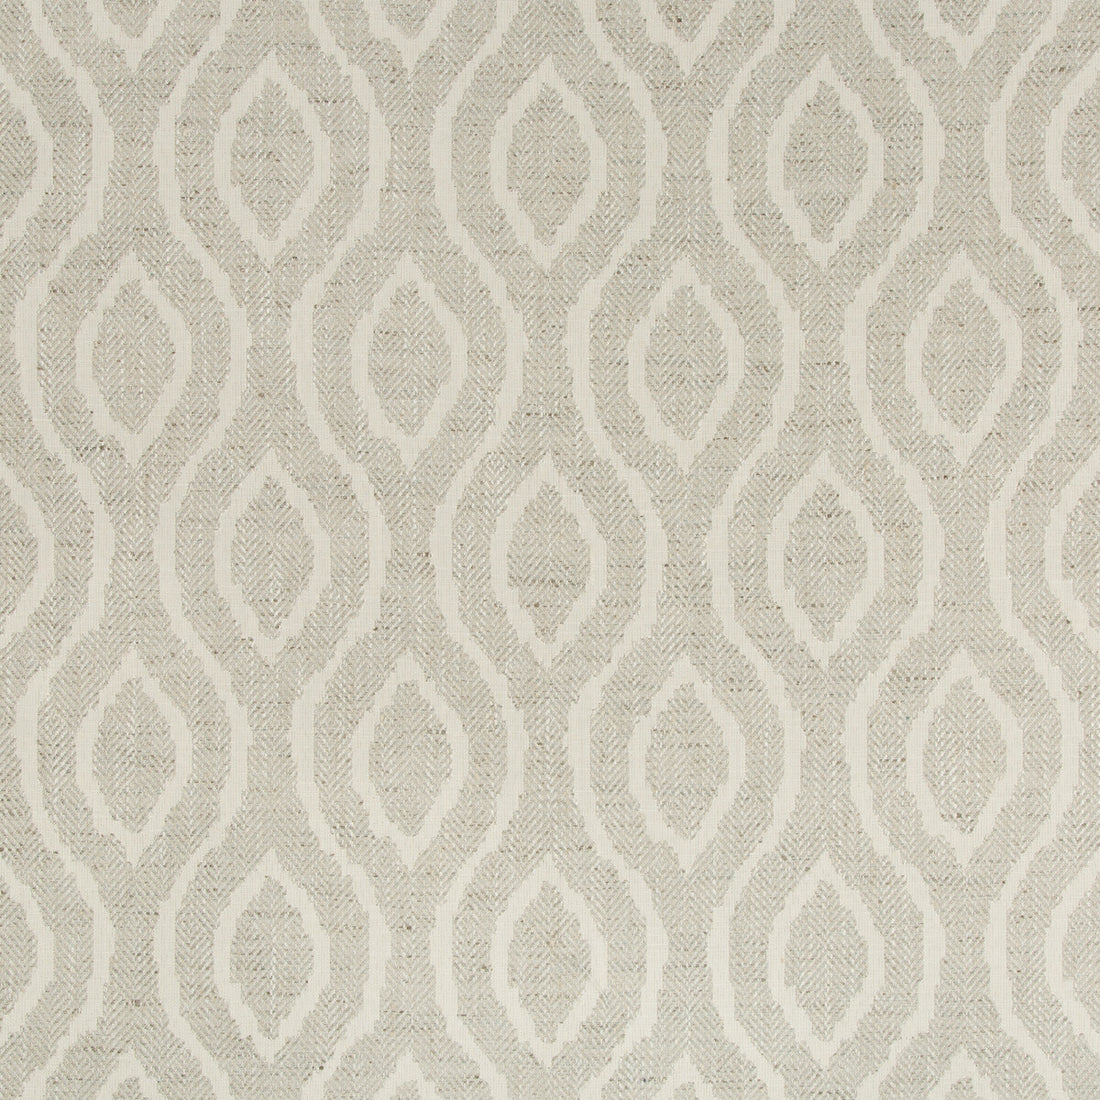 Kravet Design fabric in 35592-11 color - pattern 35592.11.0 - by Kravet Design